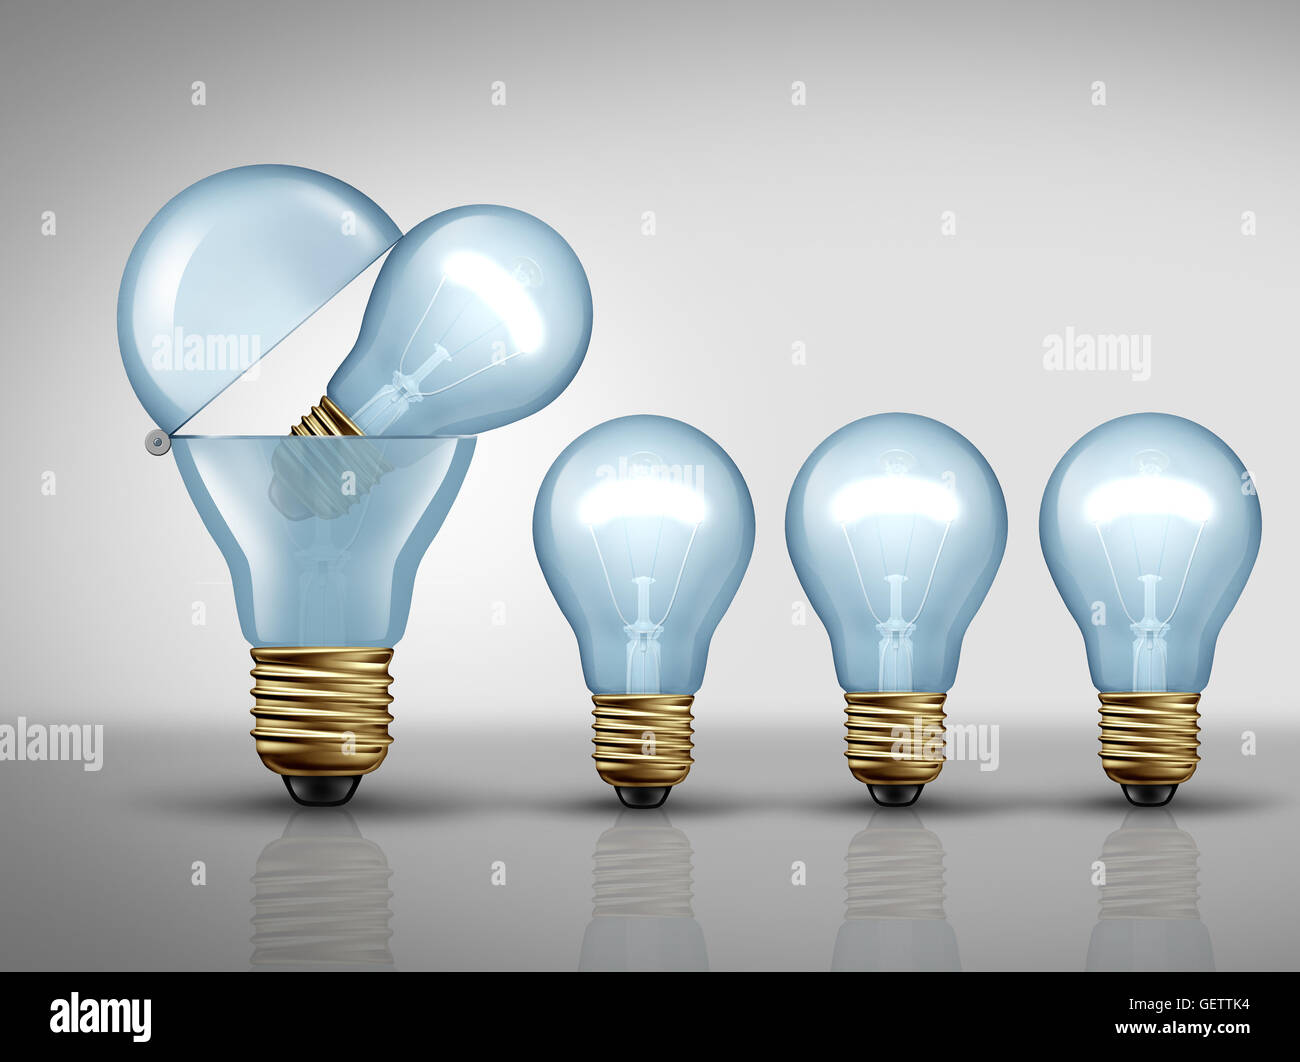 Produktivität-Konzept und blühende Fantasie Geschäft Symbol als offene Glühbirne oder Glühlampe erstellen kleiner Lichter als fruchtbare Idee Schöpfung Metapher oder clever Herstellung Strategie Symbol als eine 3D Darstellung. Stockfoto